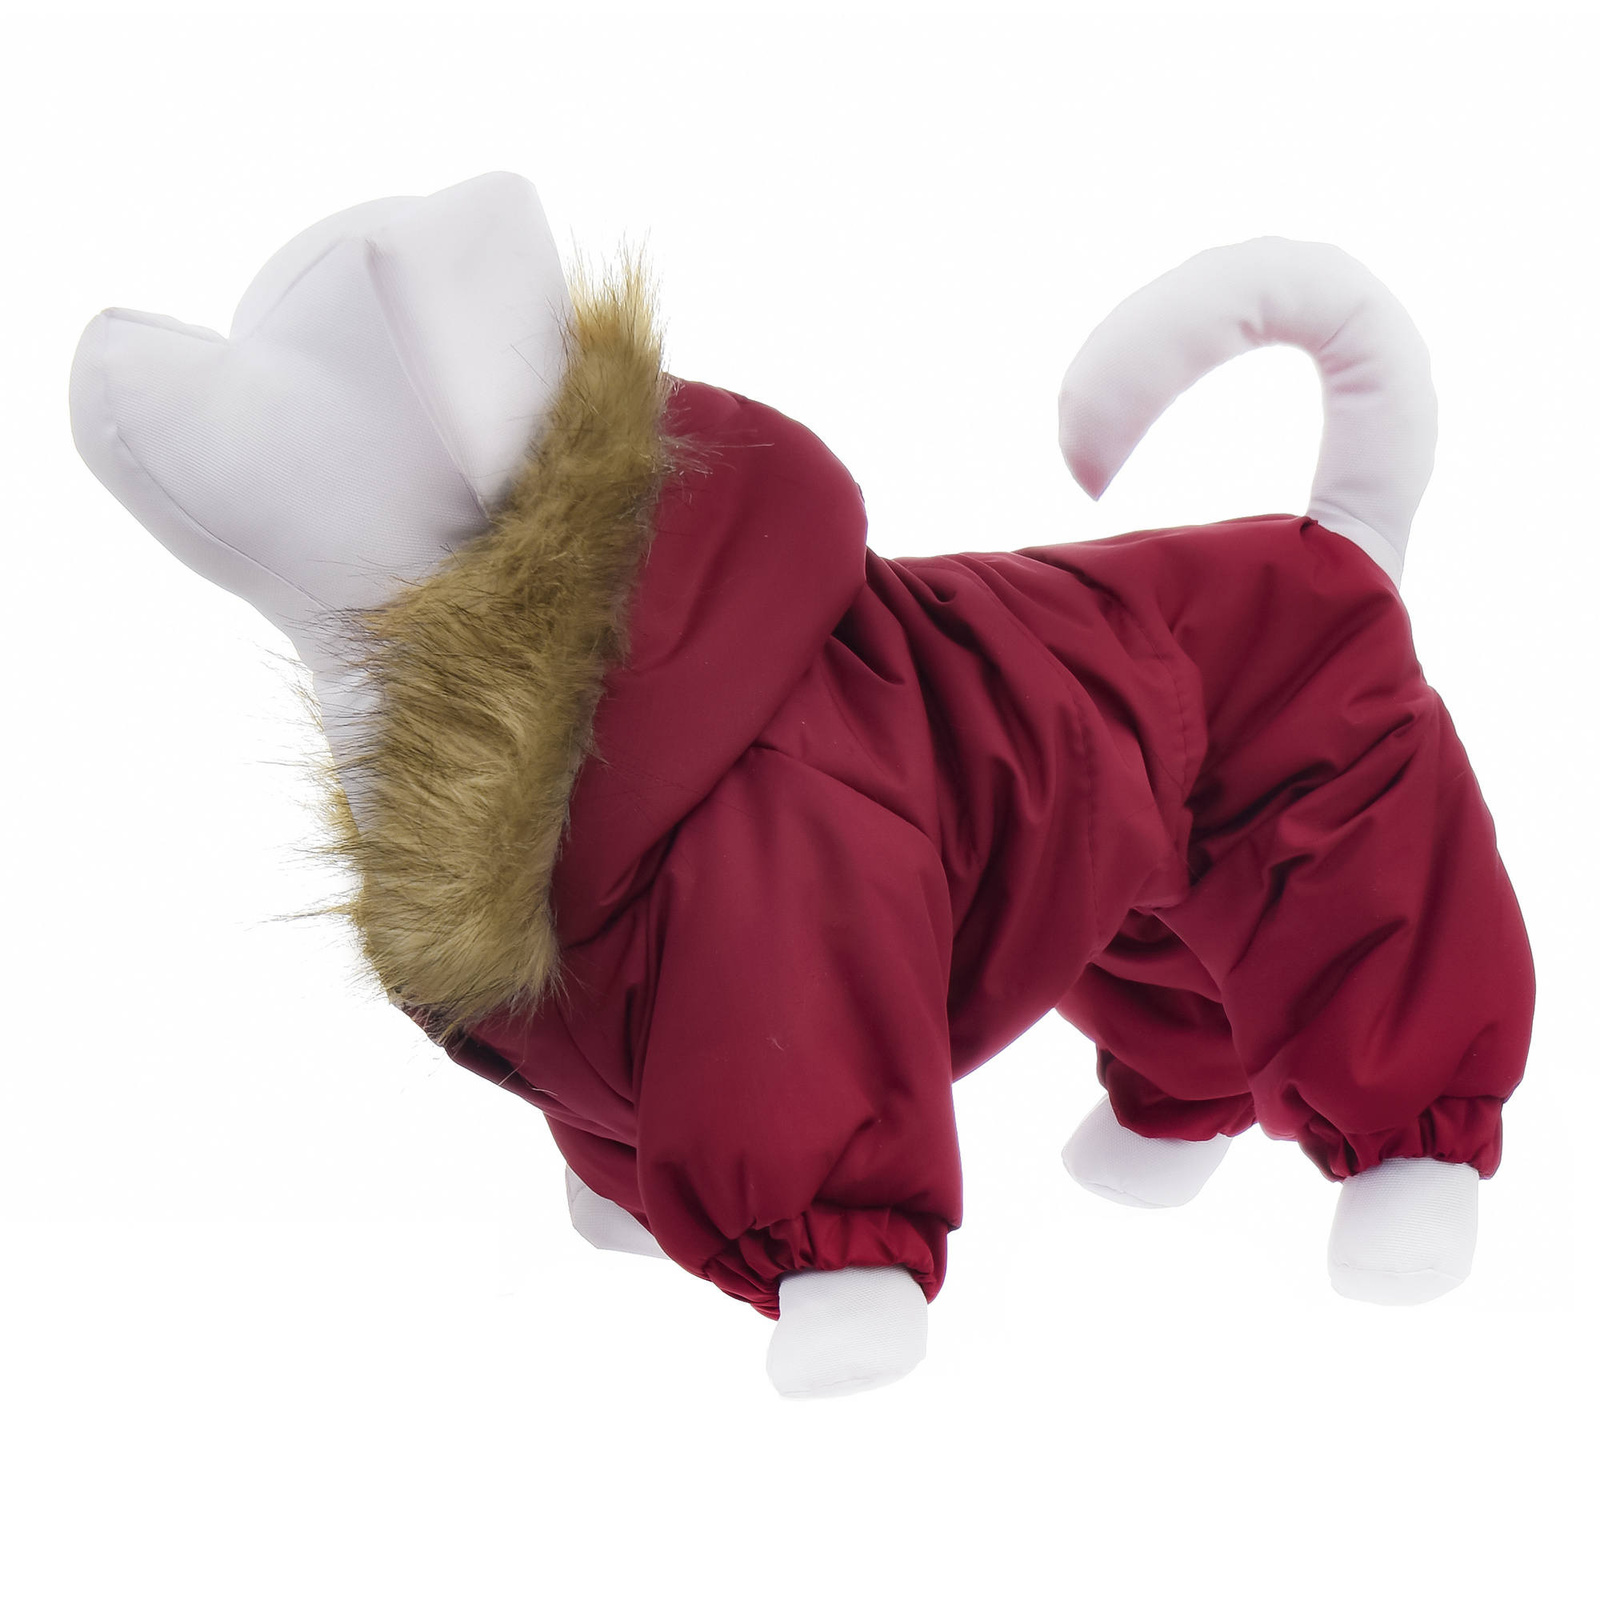 Yami-Yami одежда Yami-Yami одежда комбинезон для собак с капюшоном, на меховой подкладке, бордовый (100 г) yami yami одежда yami yami одежда комбинезон для собак на флисовой подкладке коричнево розовый s